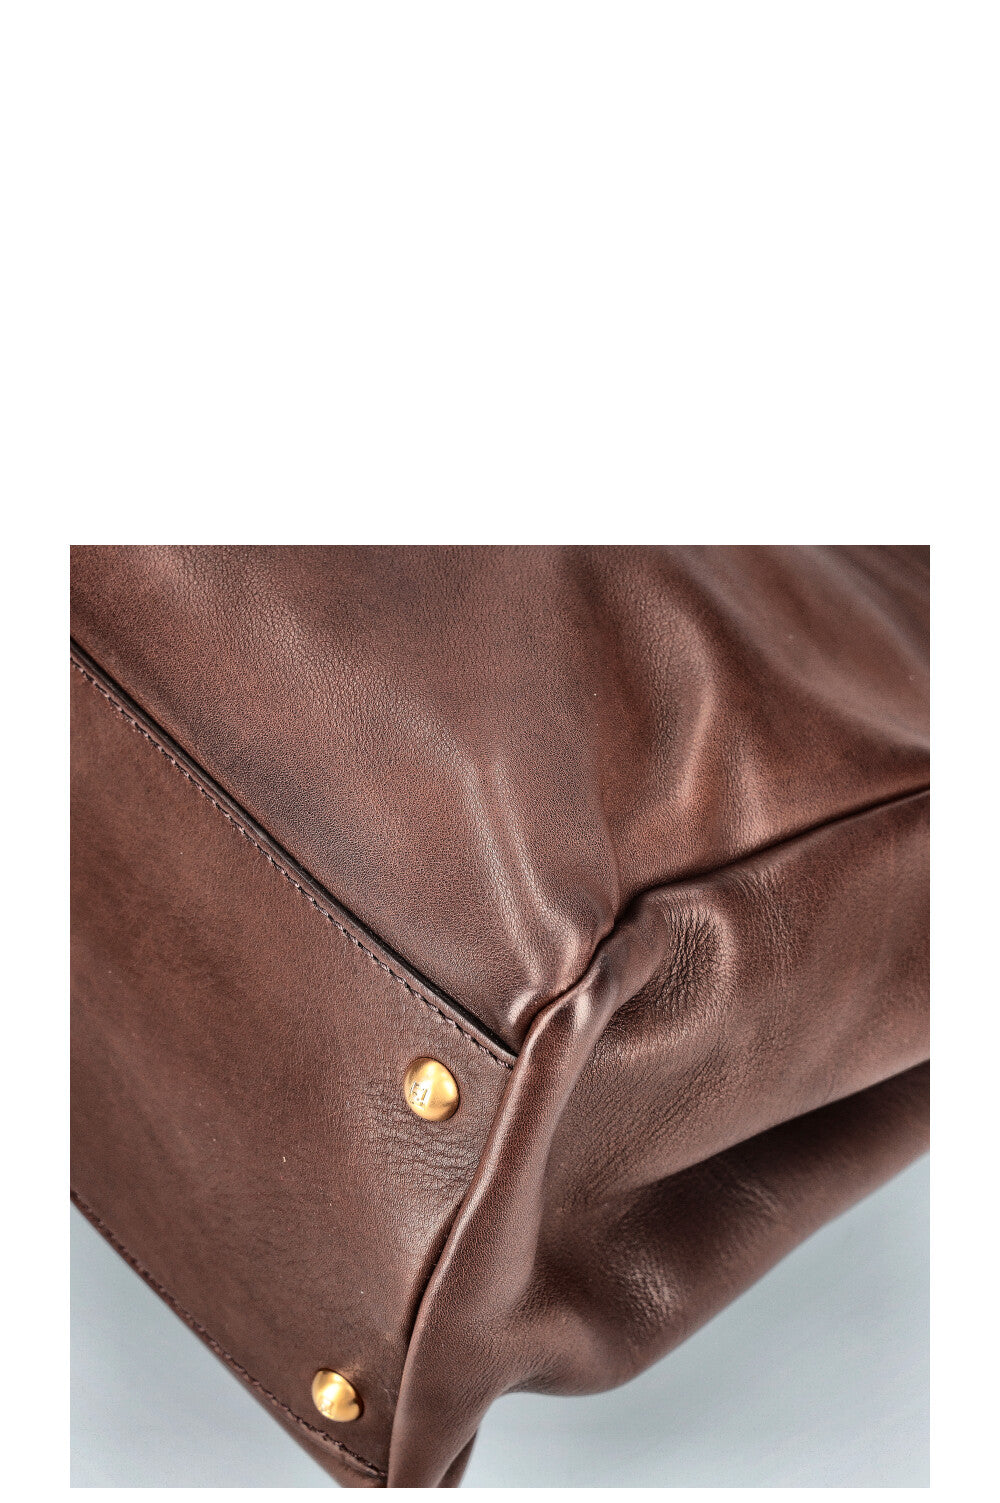 FENDI Peekaboo Large Brown Leather